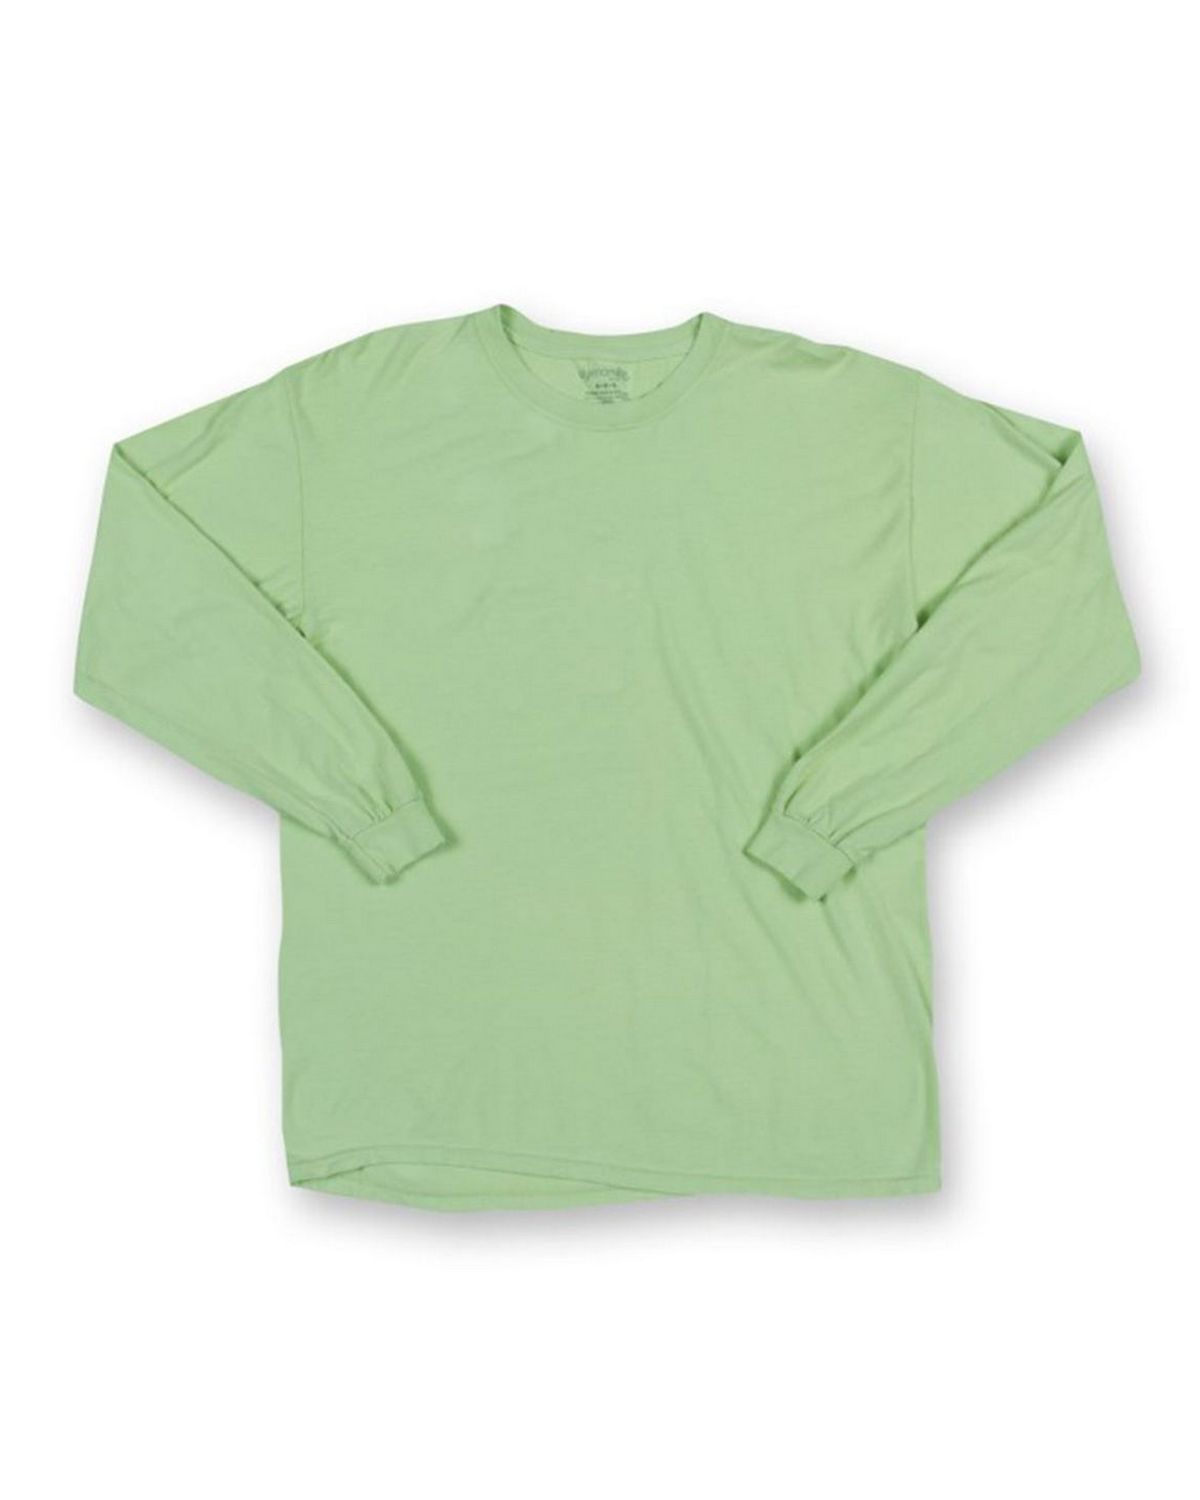 Dyenomite 470PG Pigment Dyed Garment Tie Dye T-Shirt